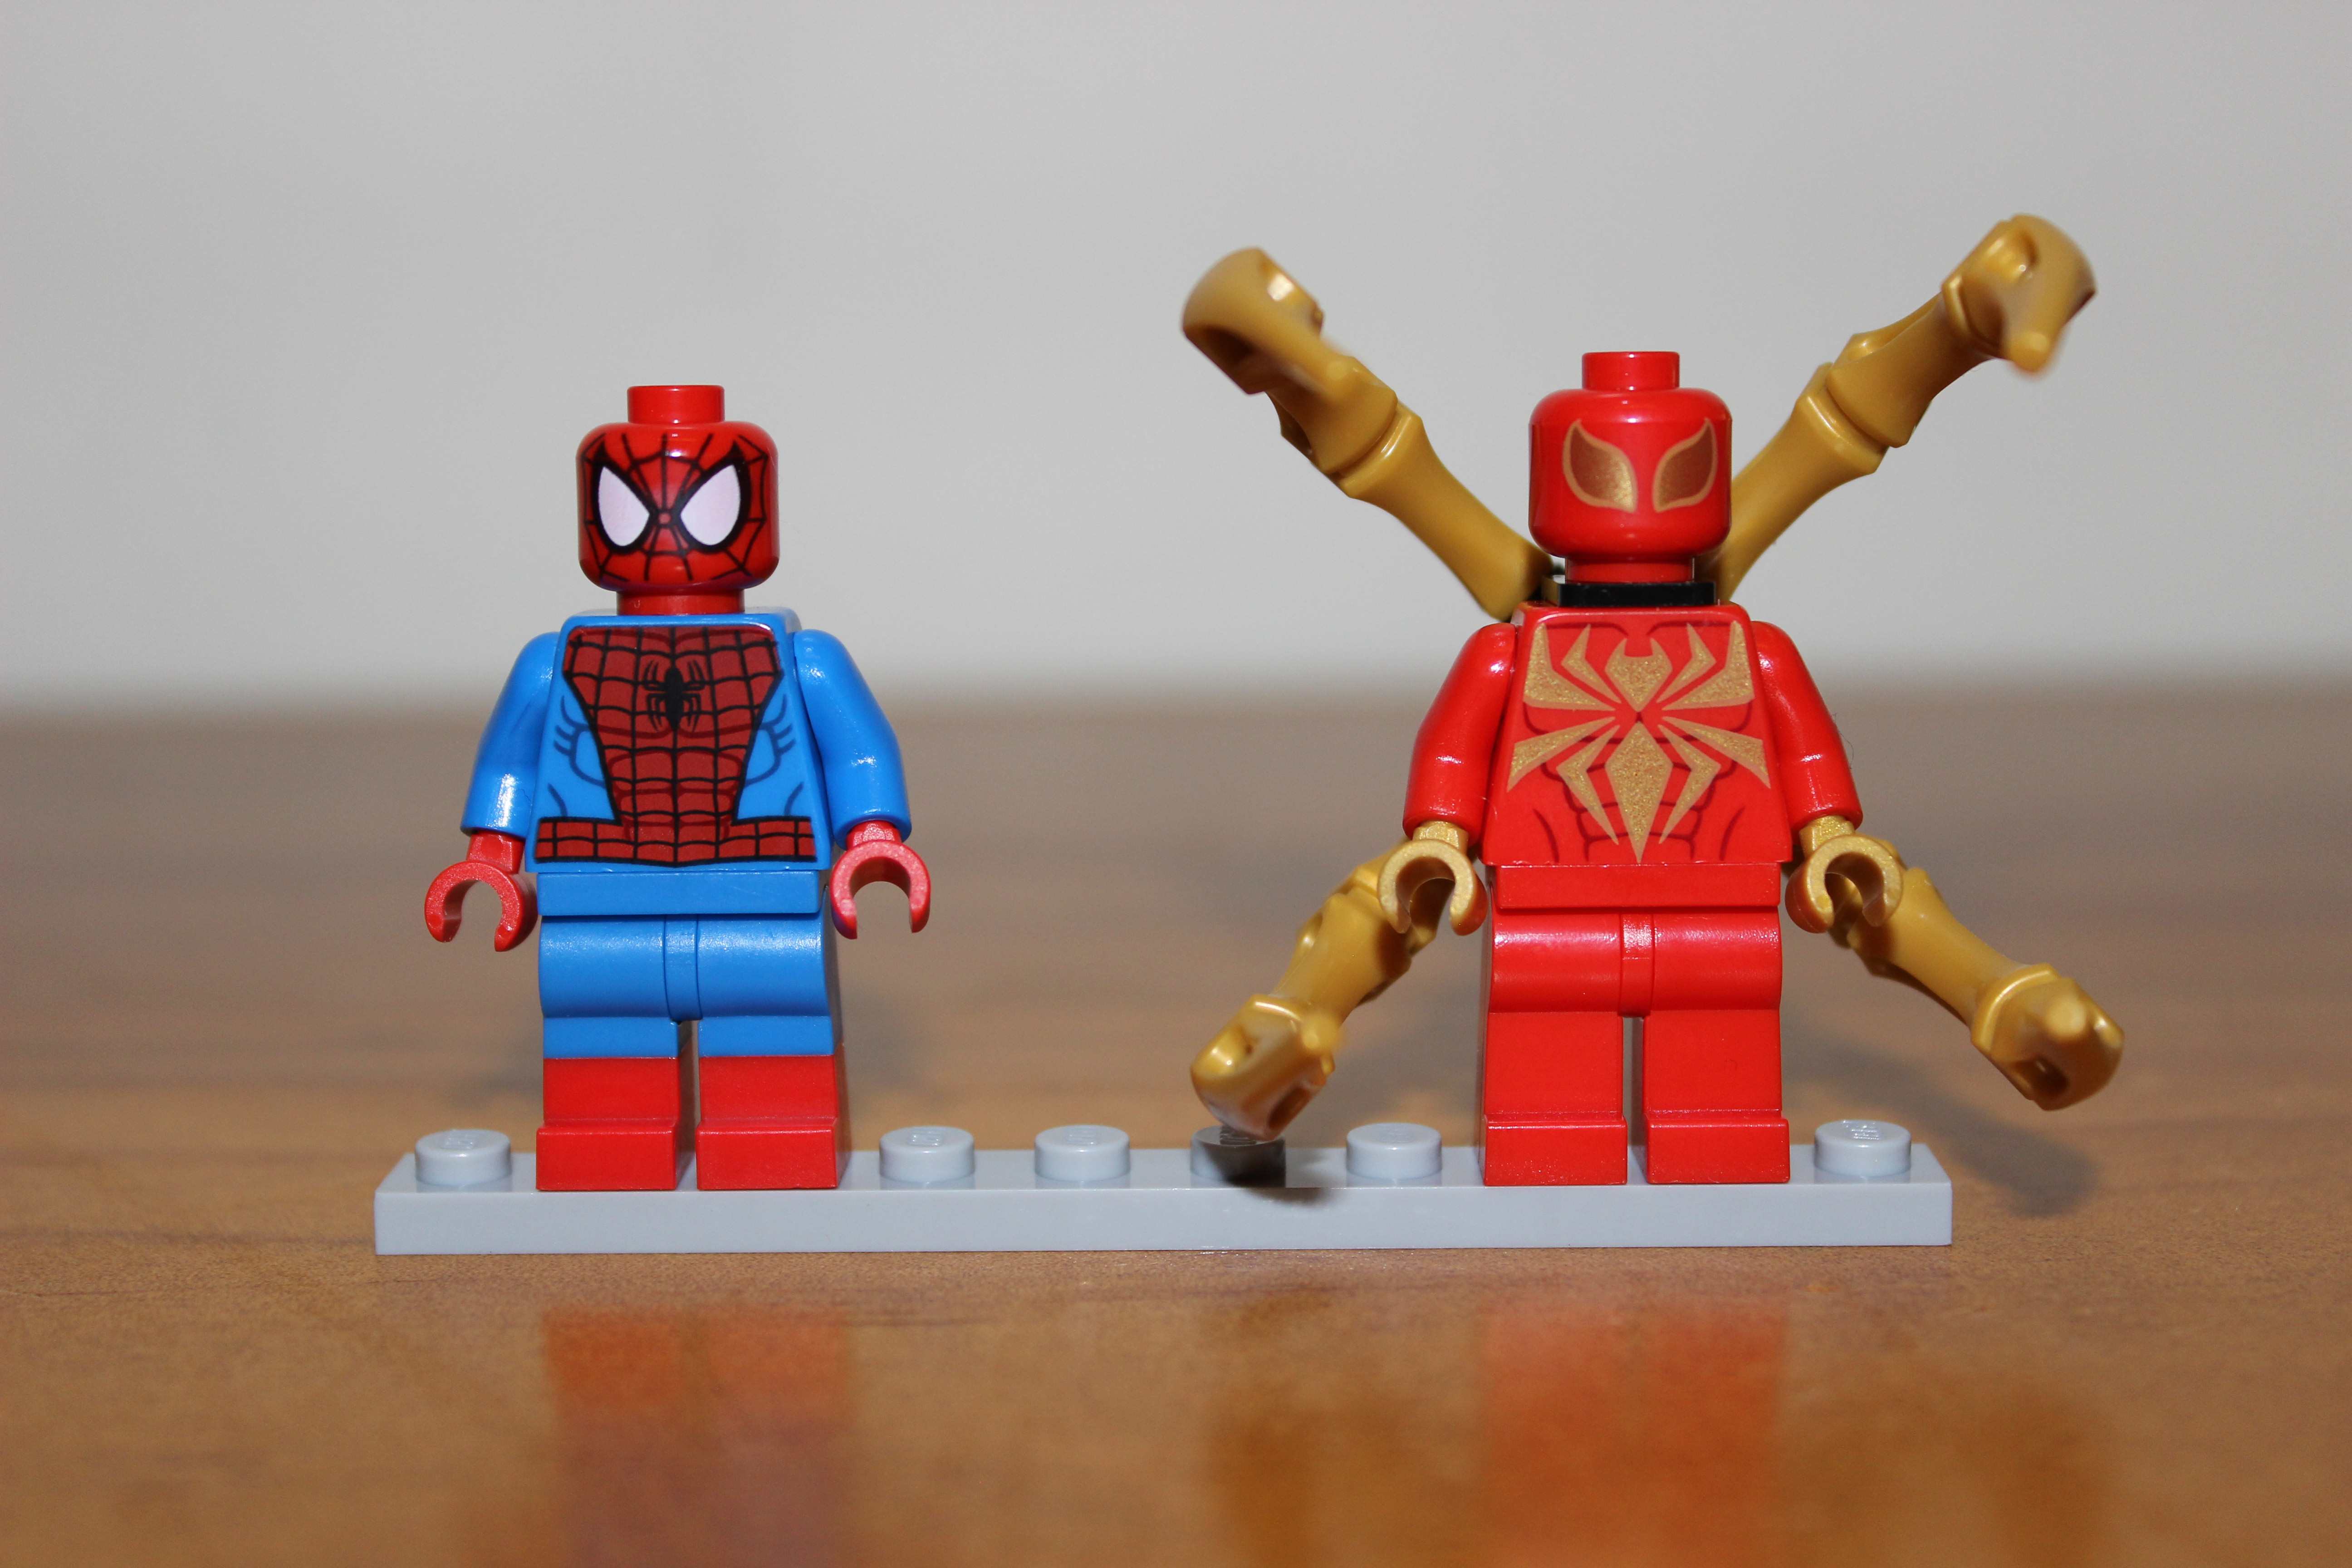 lego spider man villains